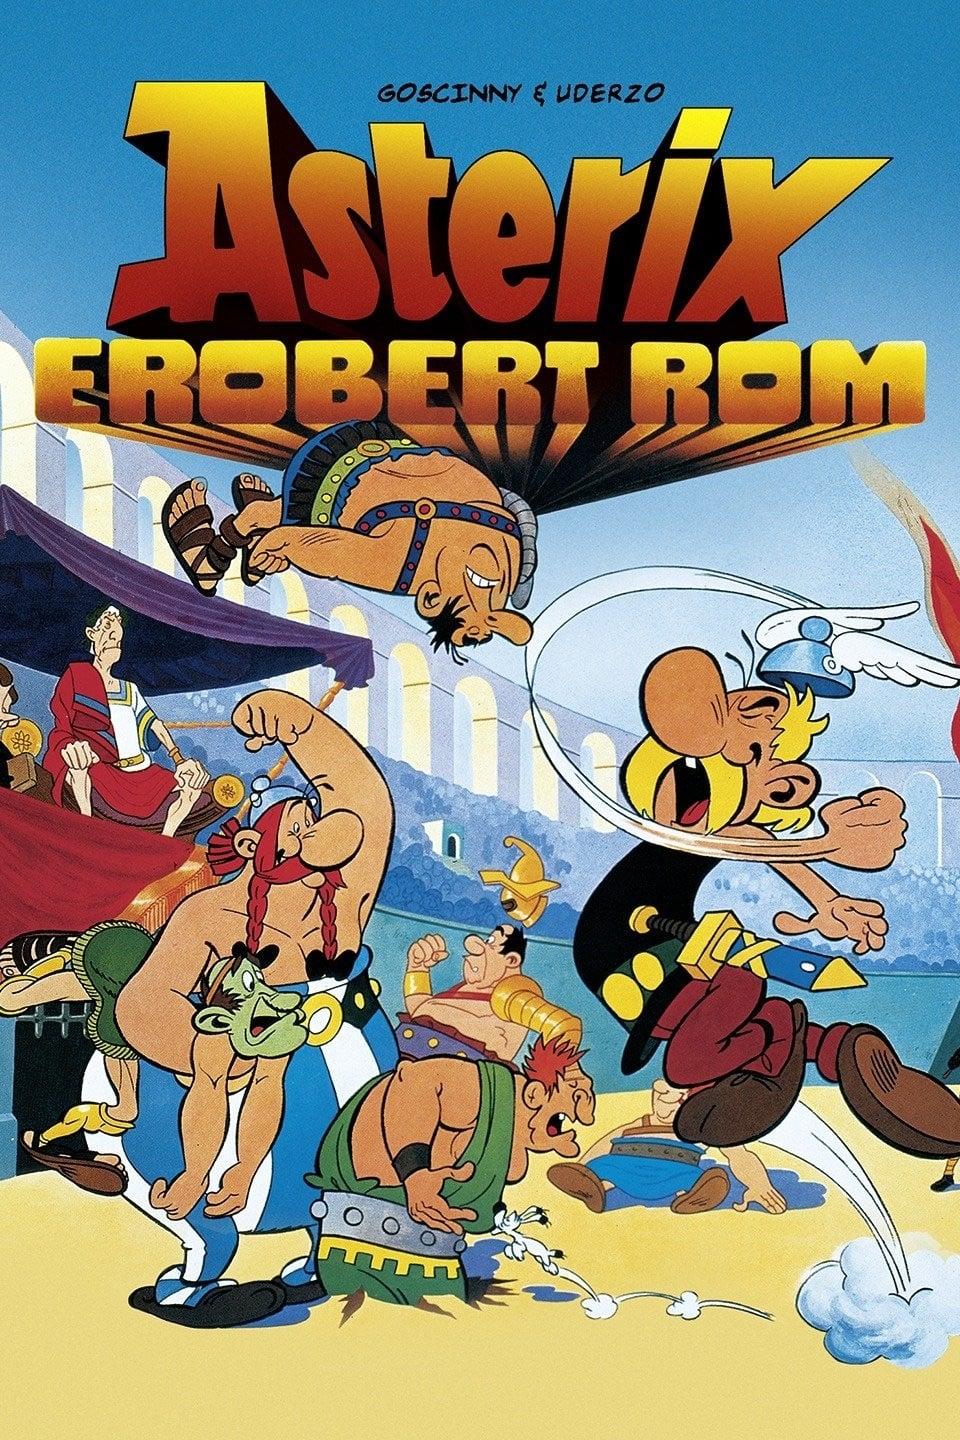 Asterix erobert Rom poster